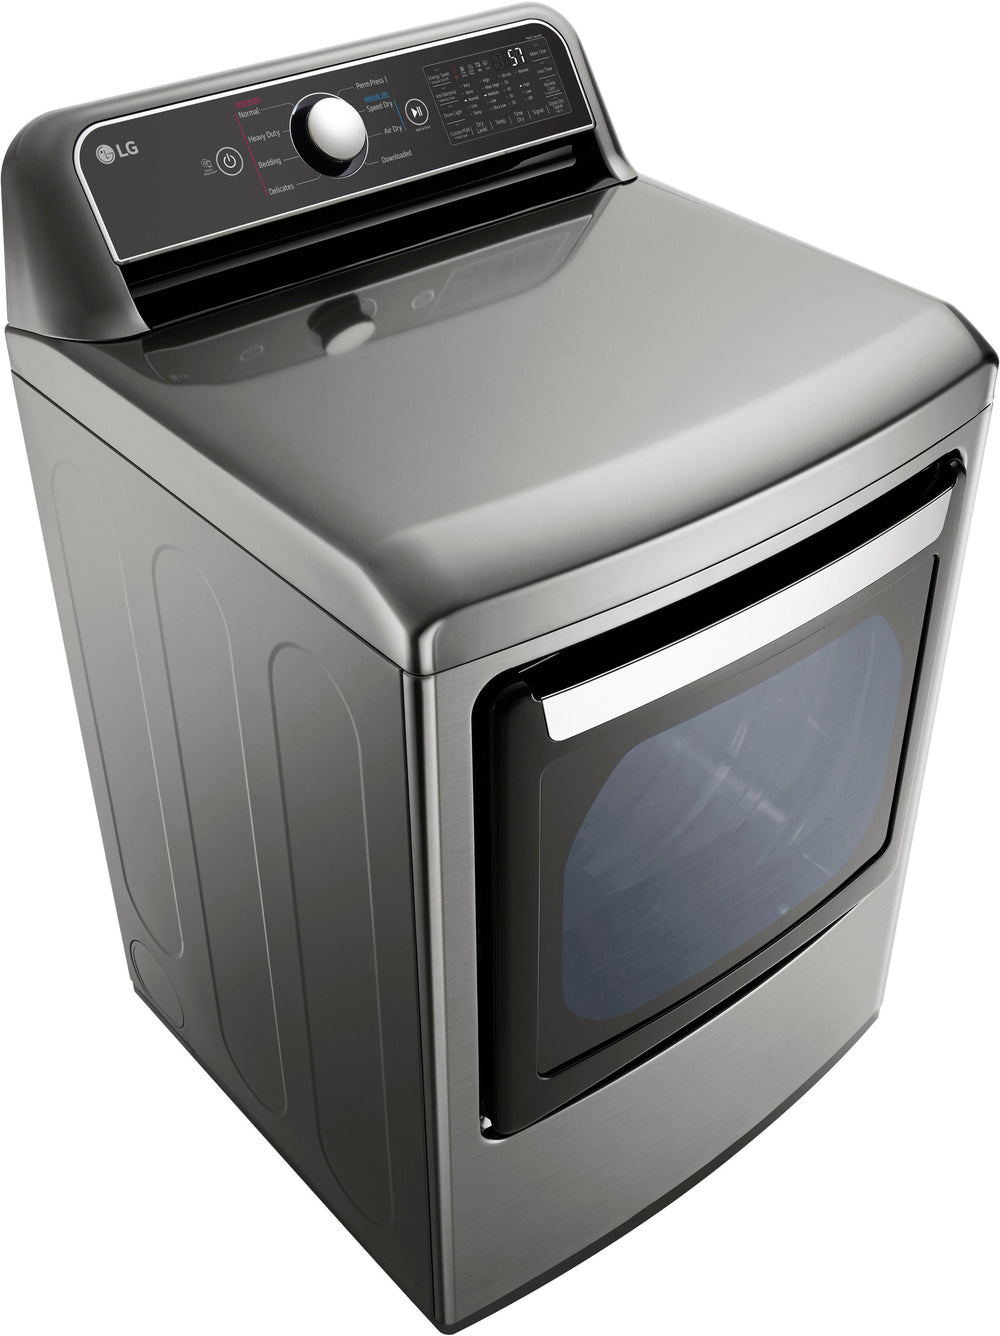 LG - 7.3 Cu. Ft. Smart Electric Dryer with EasyLoad Door - Graphite steel_1